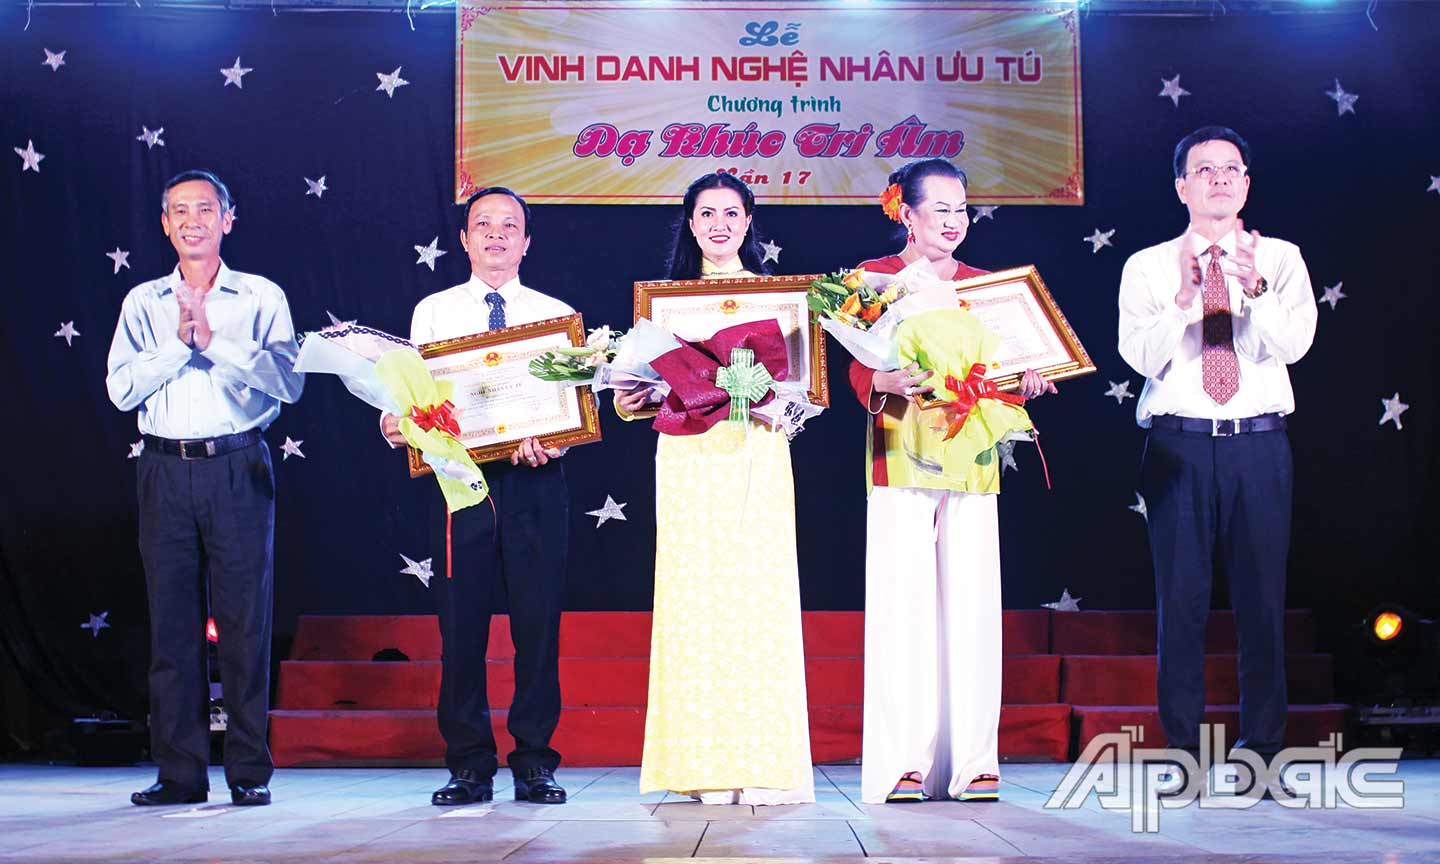 Nghệ nhân Út Son (thứ 2 từ phải sang) được phong tặng danh hiệu Nghệ nhân Ưu tú đối với loại hình nghệ thuật bóng rỗi.